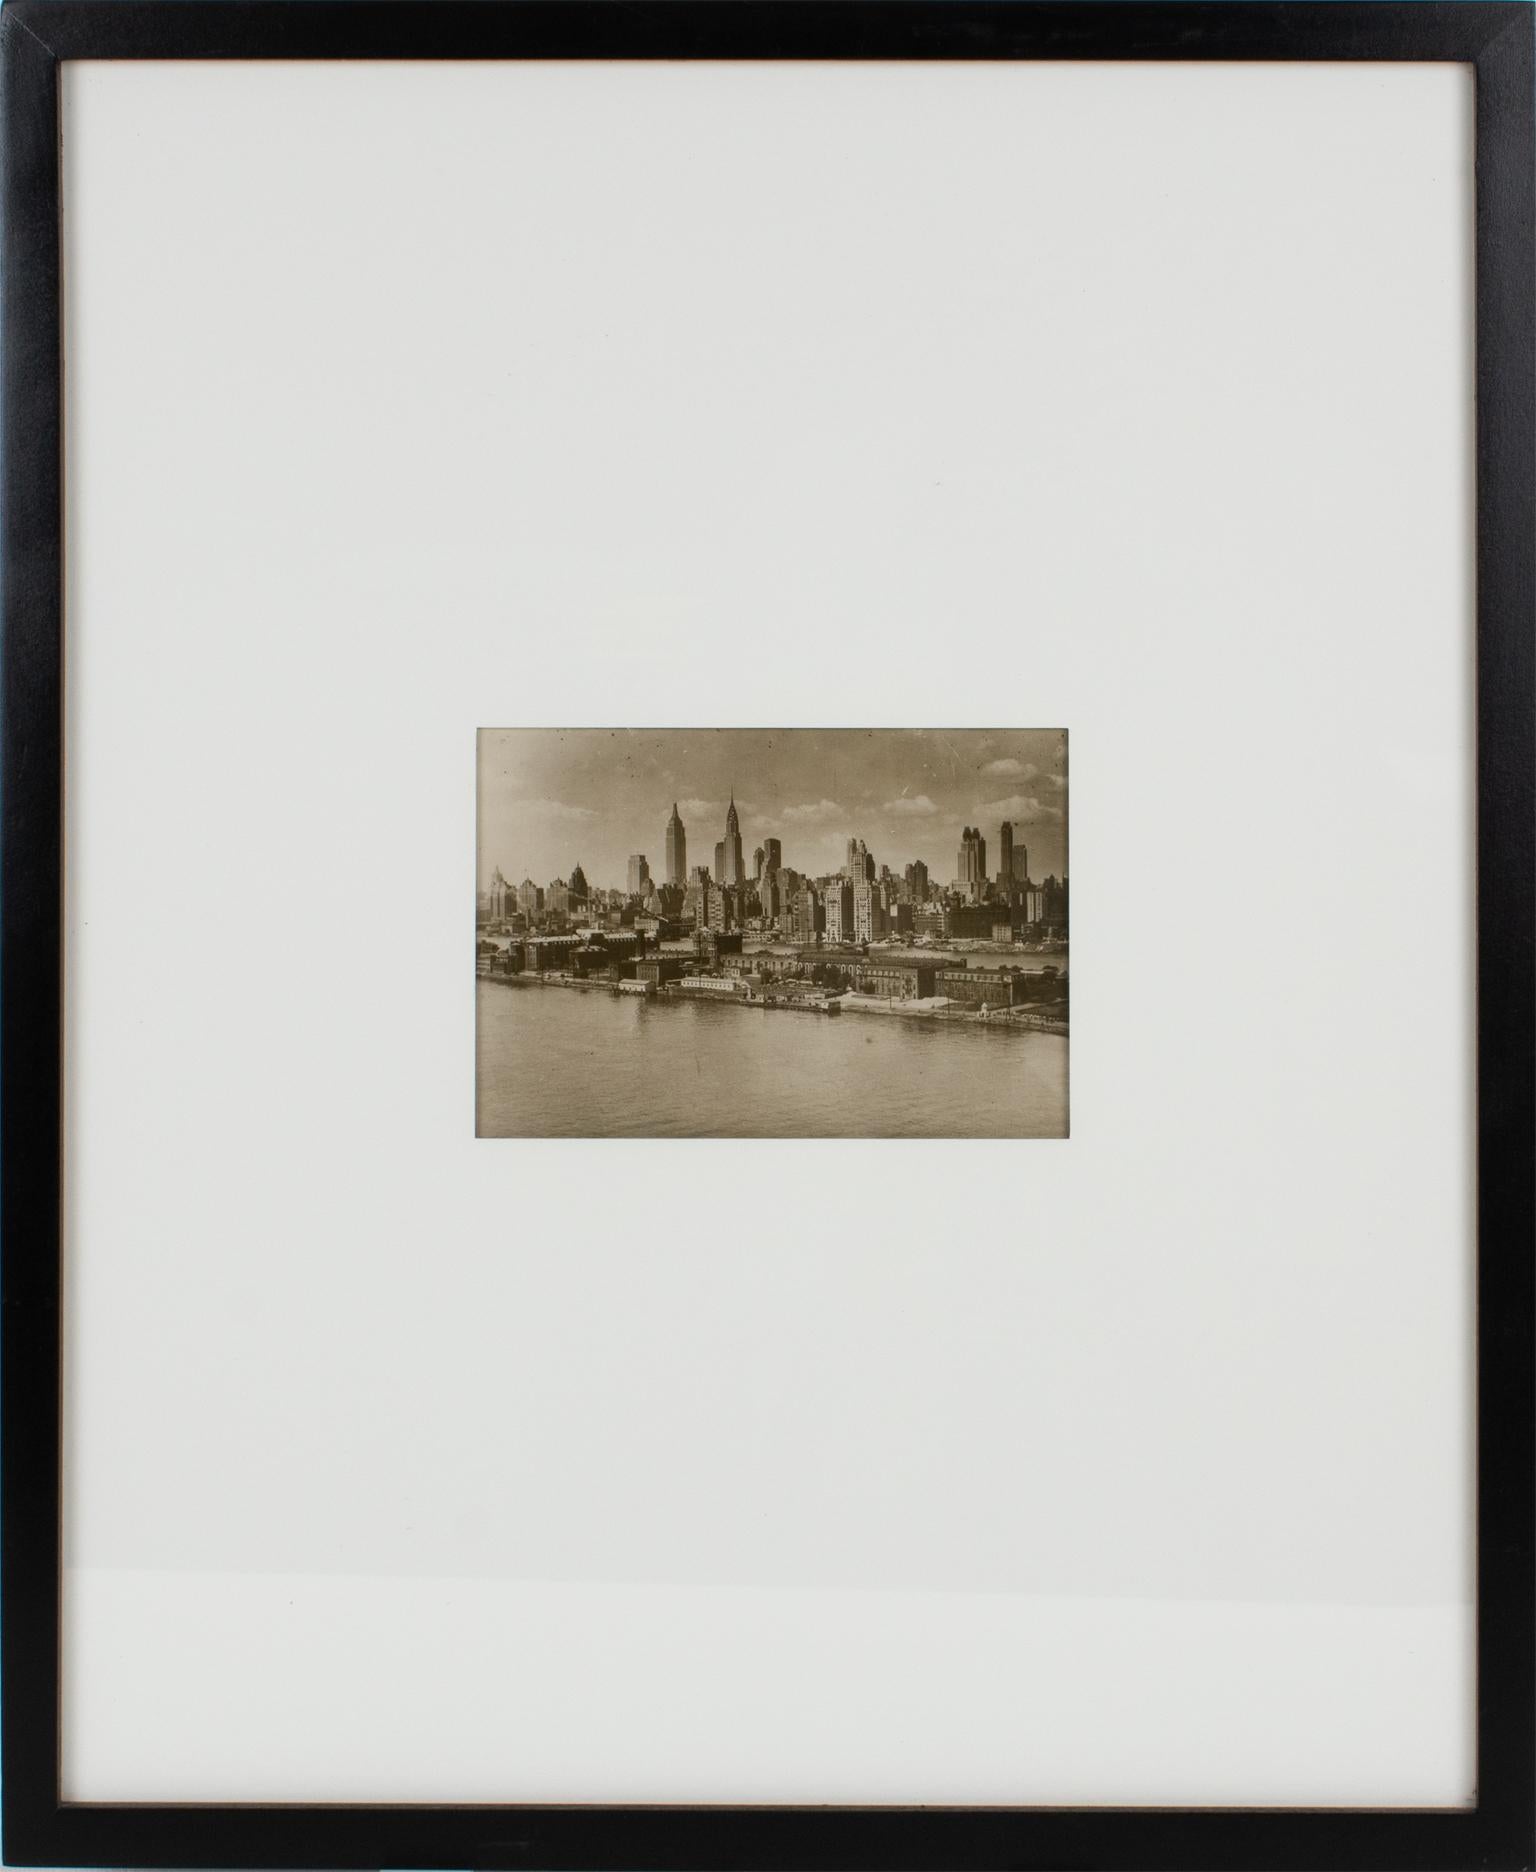 Photographie originale en noir et blanc, gélatino-argentique, réalisée par l'agence de presse Keystone View Company. Gratte-ciel de la ville de New York, le 7 juillet 1931.
Caractéristiques :
Photographie originale à la gélatine d'argent